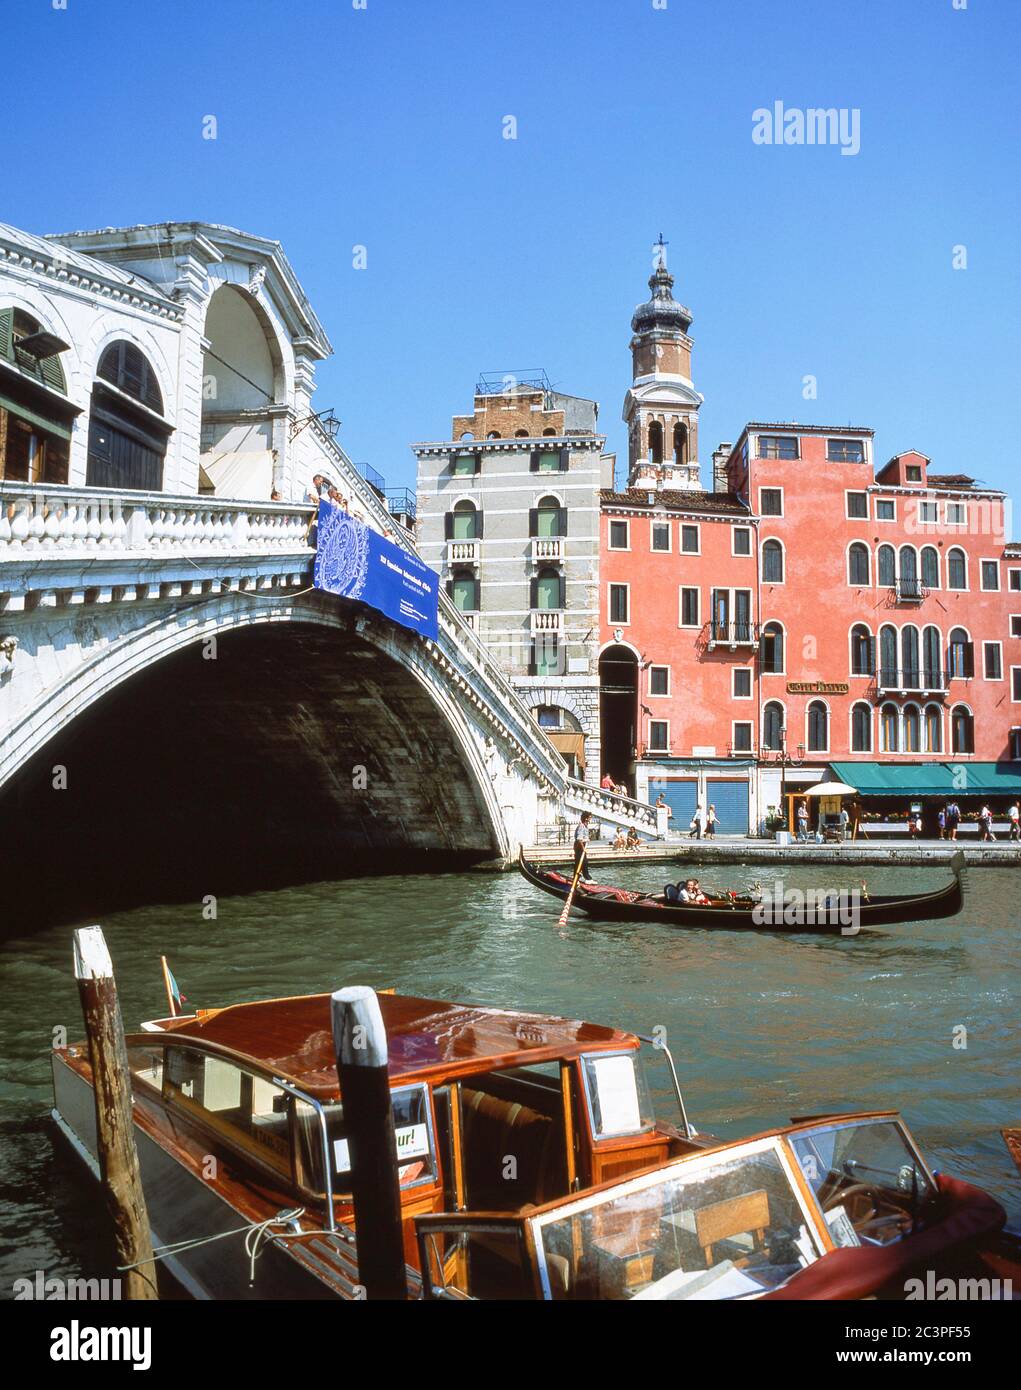 Gondola passing under Rialto Bridge (Ponte di Rialto), Grand Canal, Venice (Venezia), Veneto Region, Italy Stock Photo